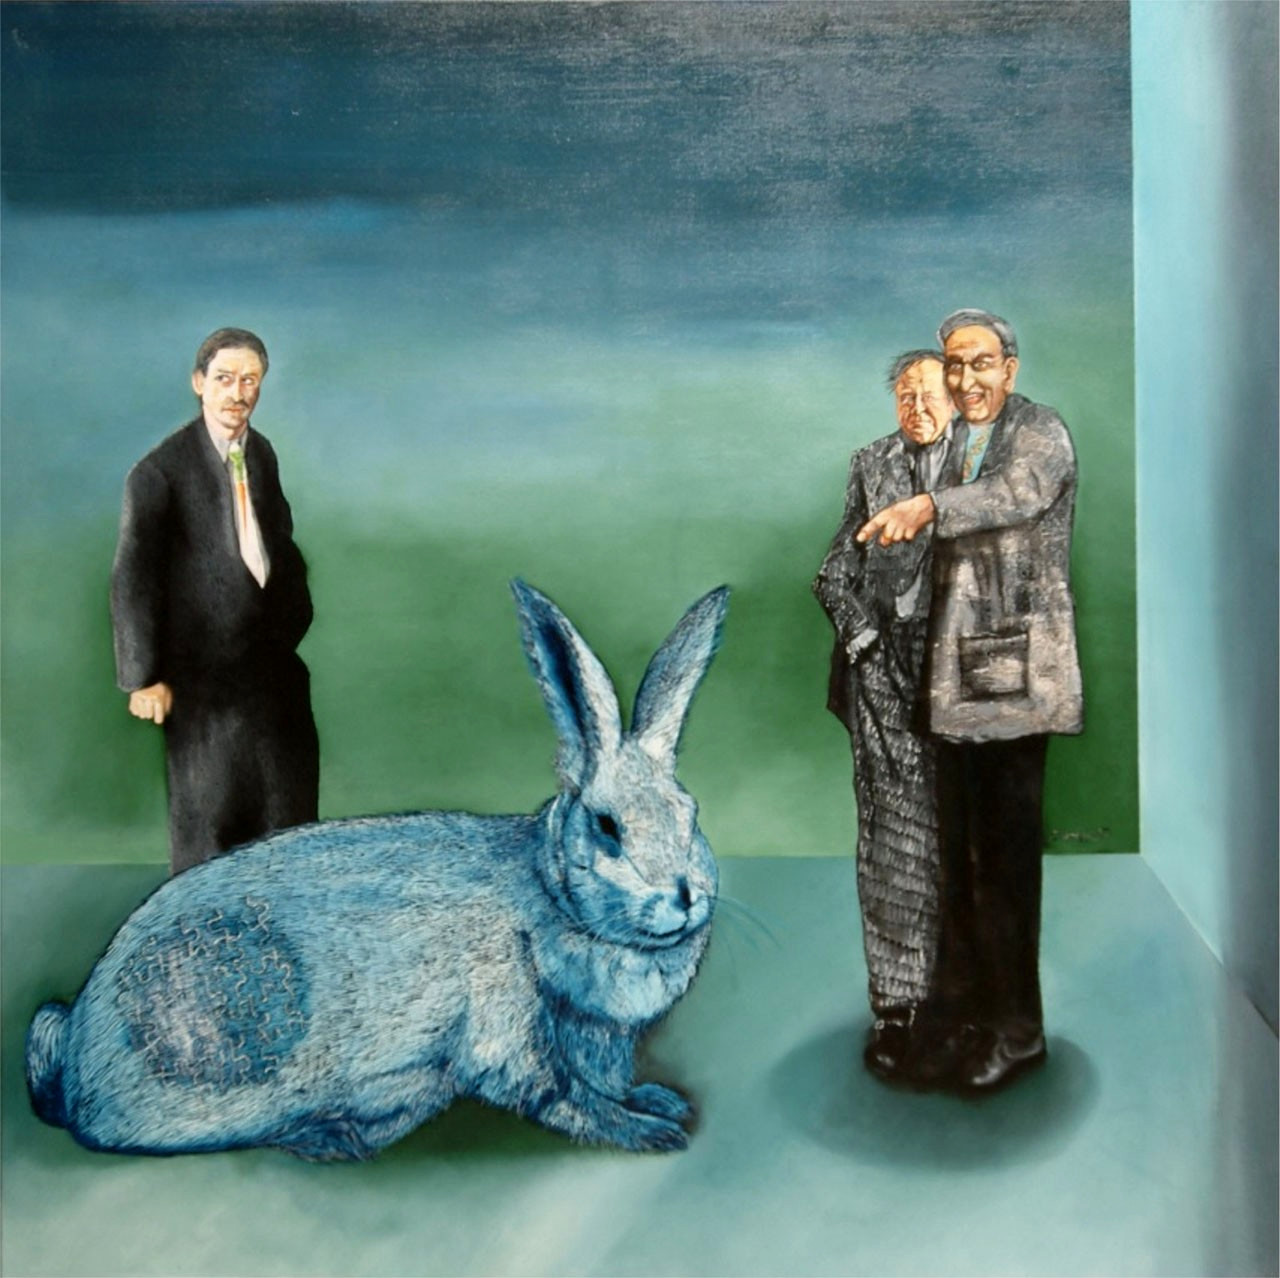 Skupinka s králíkem  
olej na plátně  
120 x 120 cm